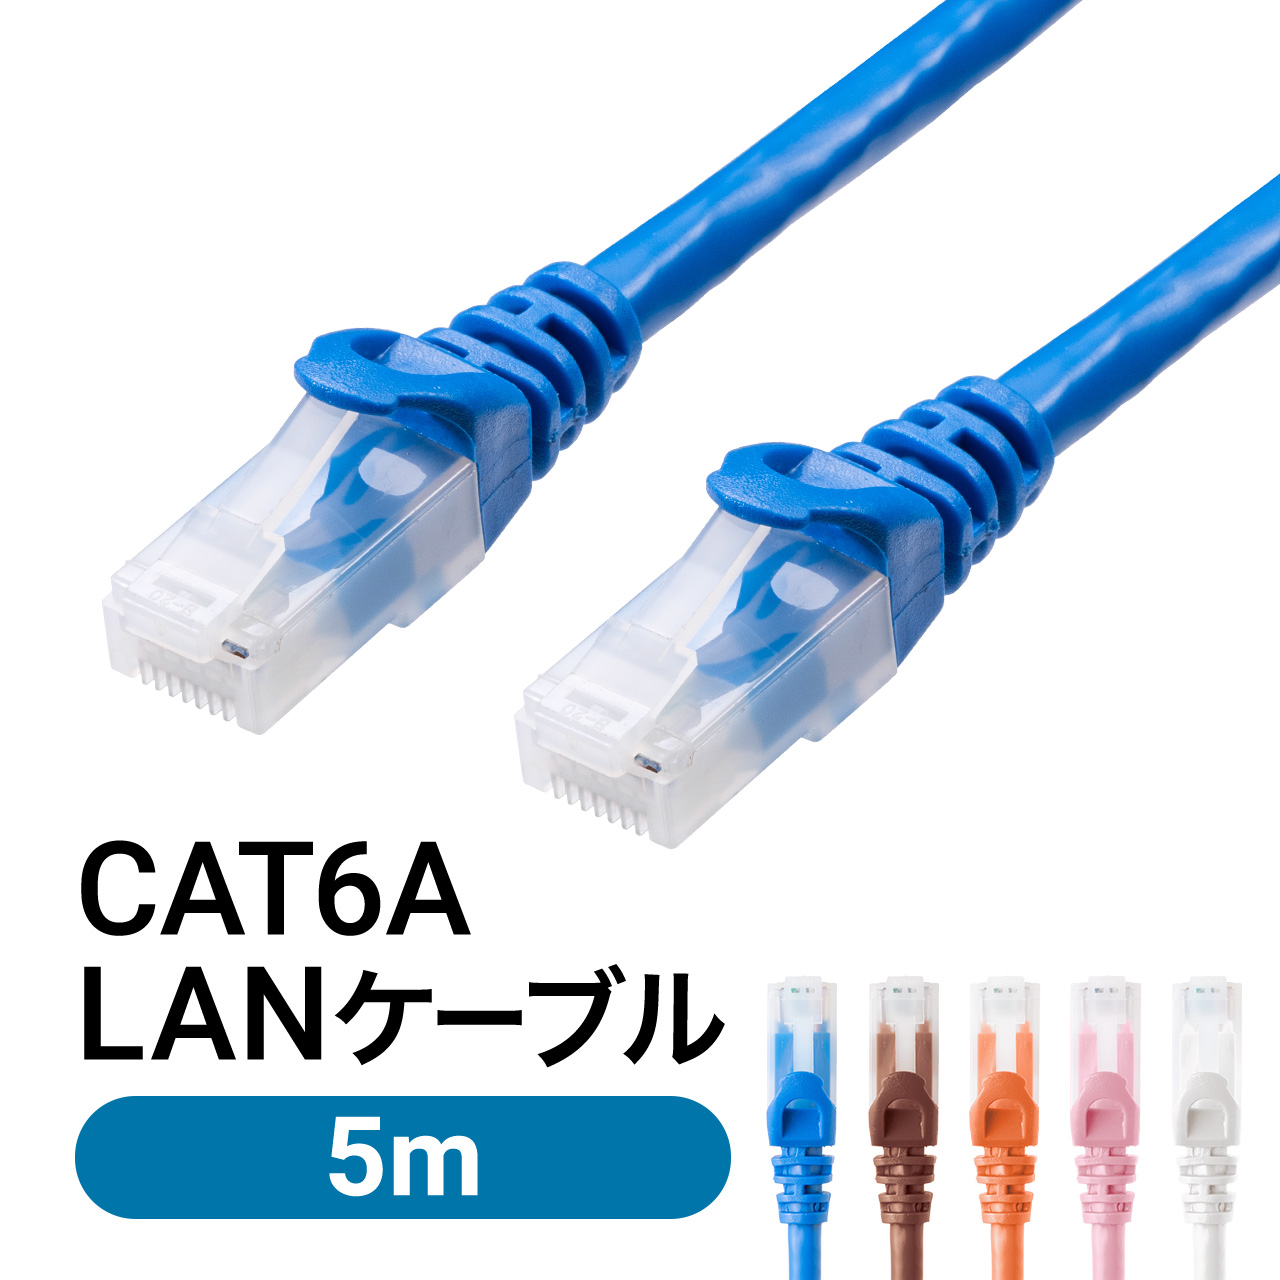 LANケーブル CAT6A 5m カテゴリ6A カテ6A ランケーブル 通信ケーブル 超高速 爪折れ防止 カバー付き より線 ストレート 全結線 PoE対応 500-LAN6AN-05